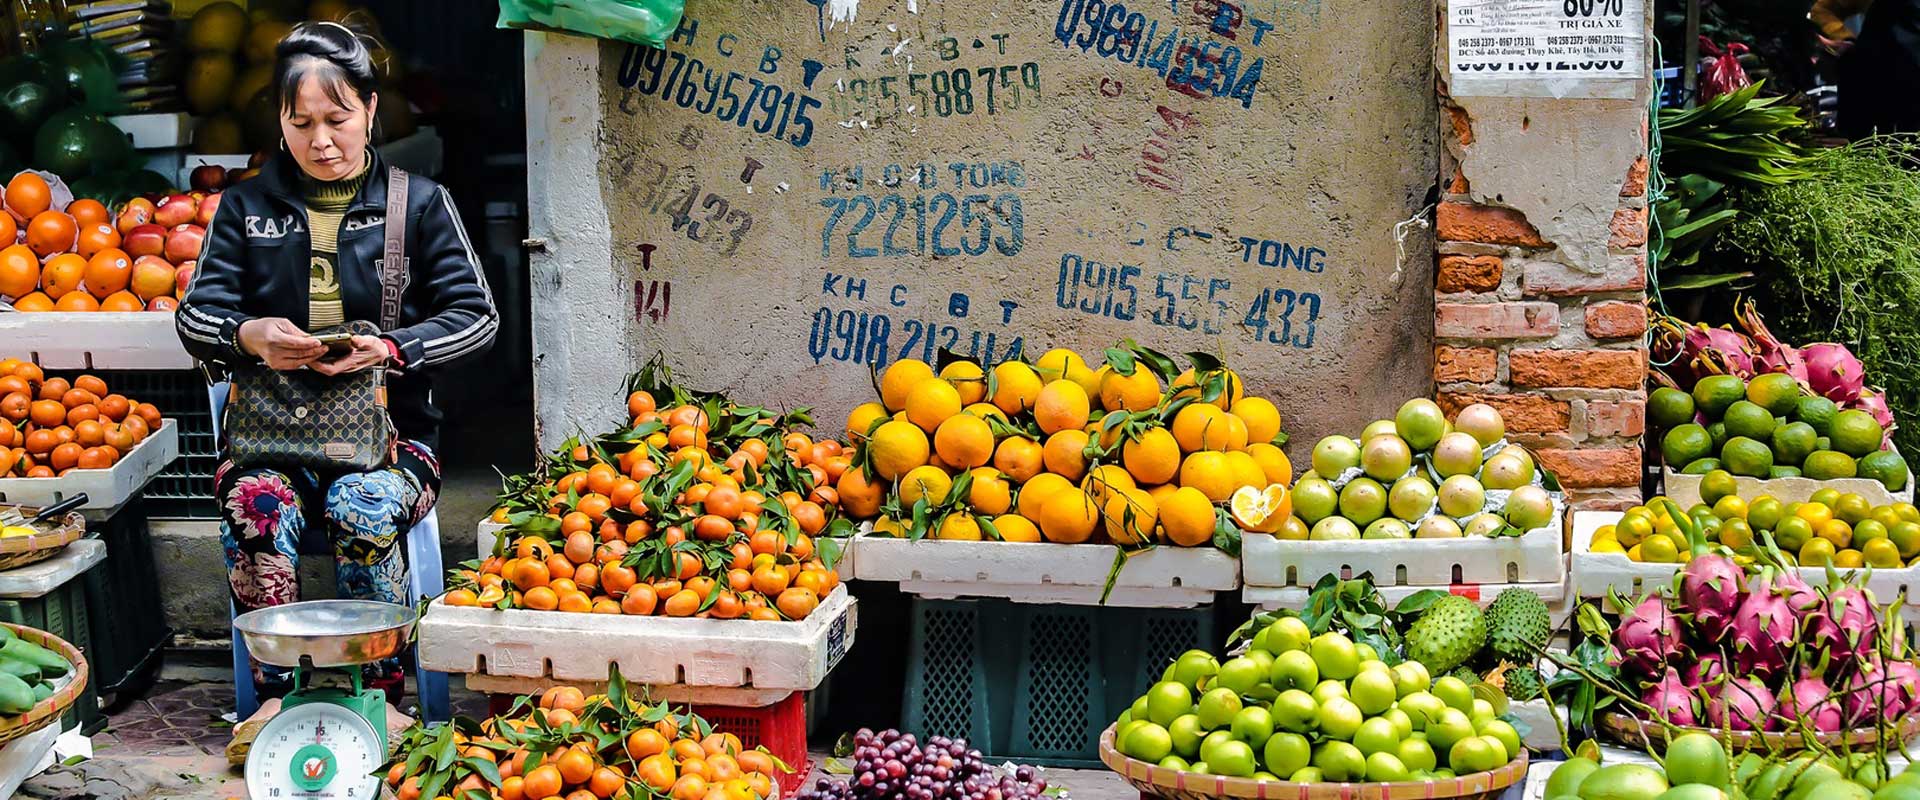 Vendeuse de fruits et légumes au Vietnam